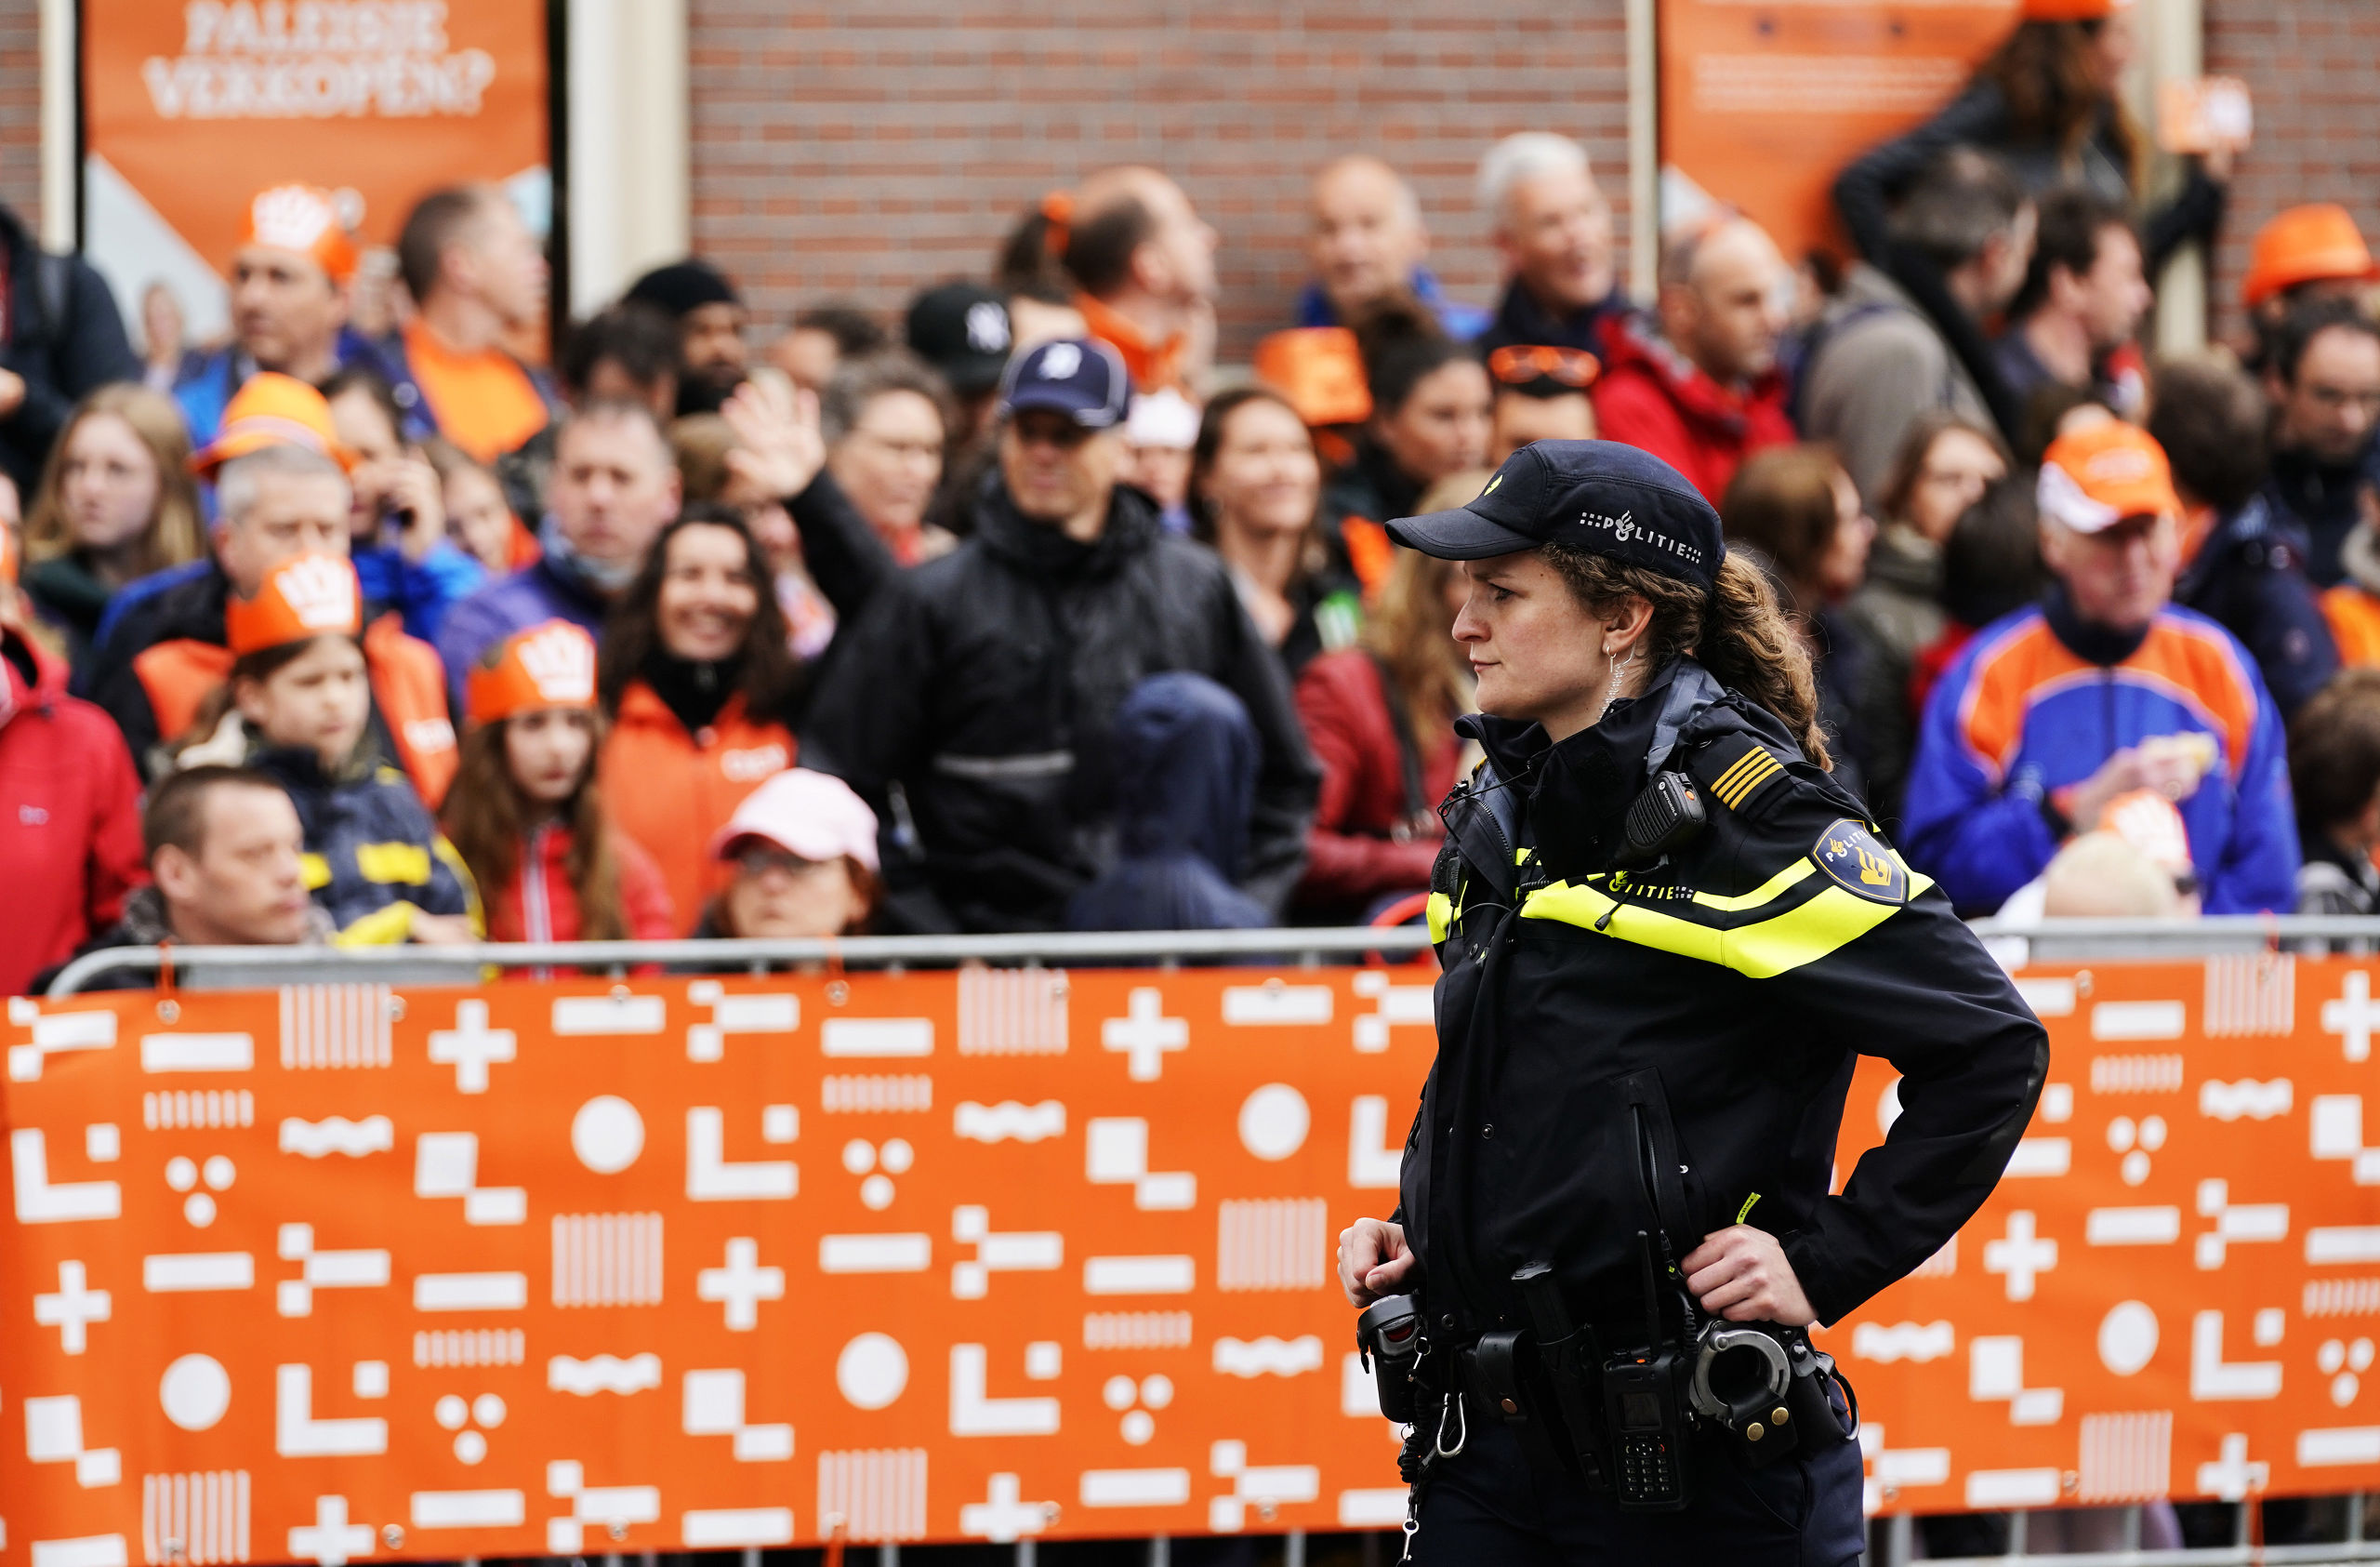 Politie-inzet tijdens Koningsdag 2019 in Amersfoort